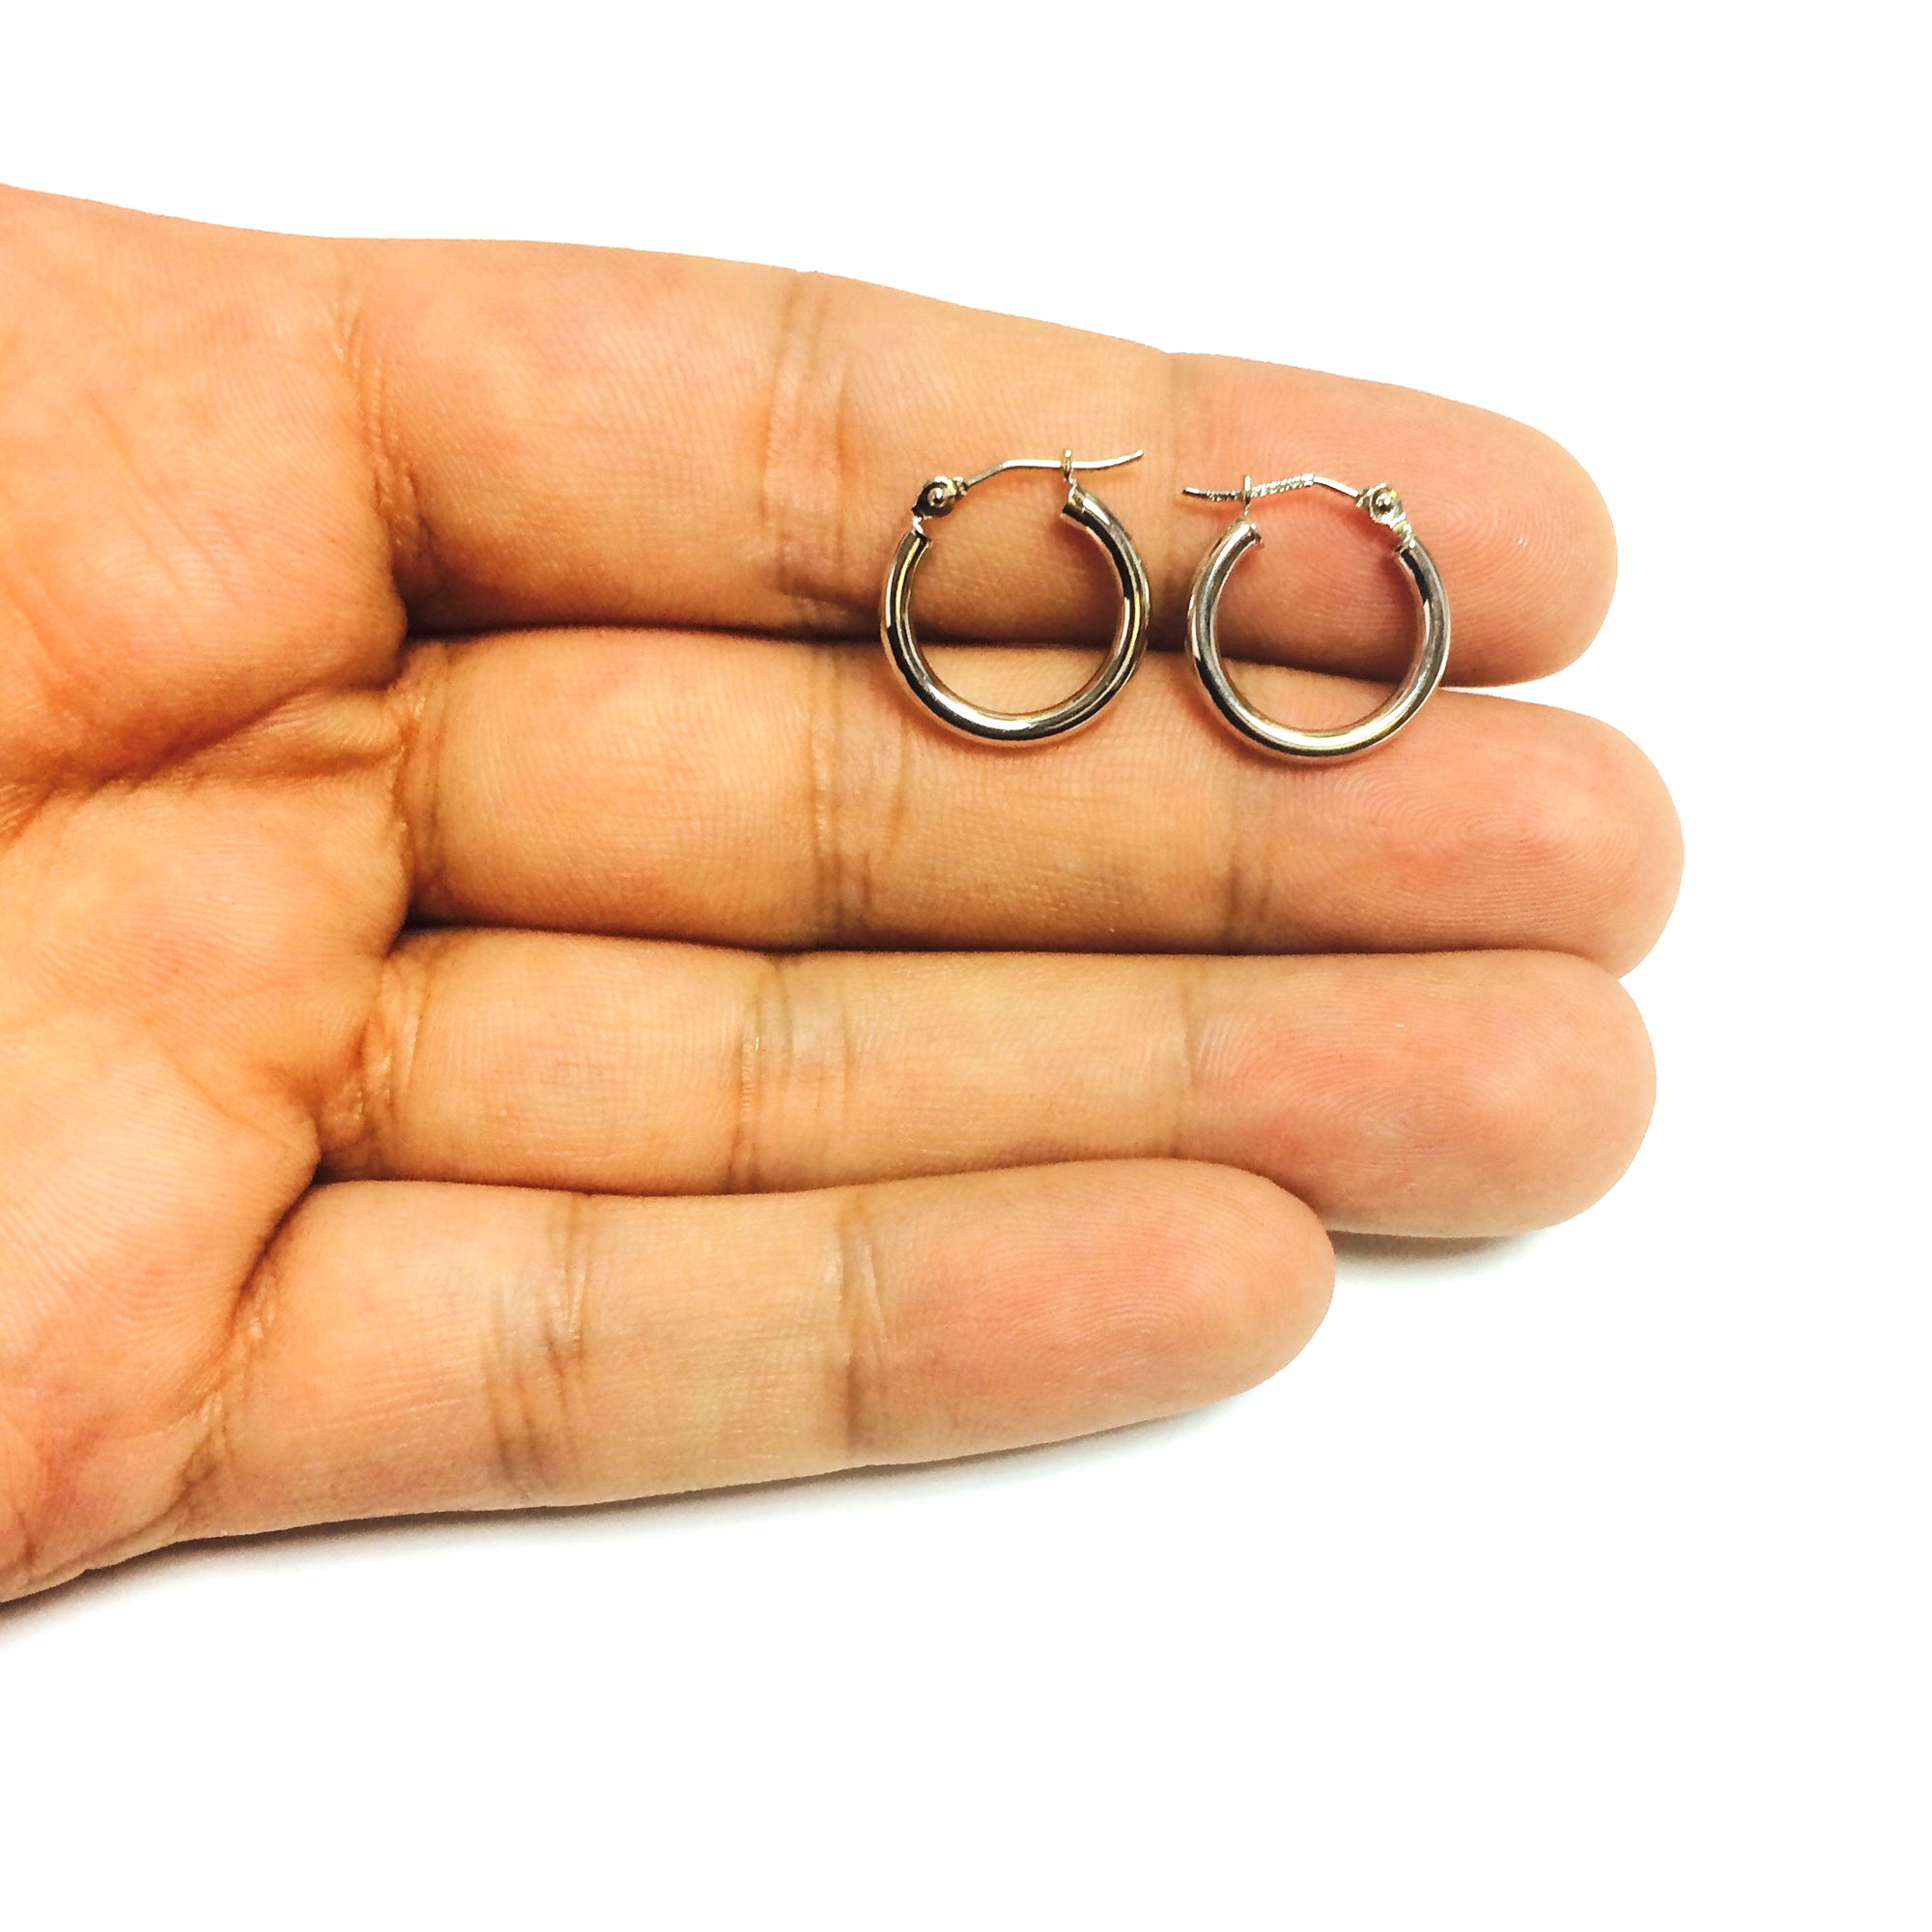 10k White Gold 2mm Shiny Round Tube Hoop Earrings fine designer jewelry for men and women